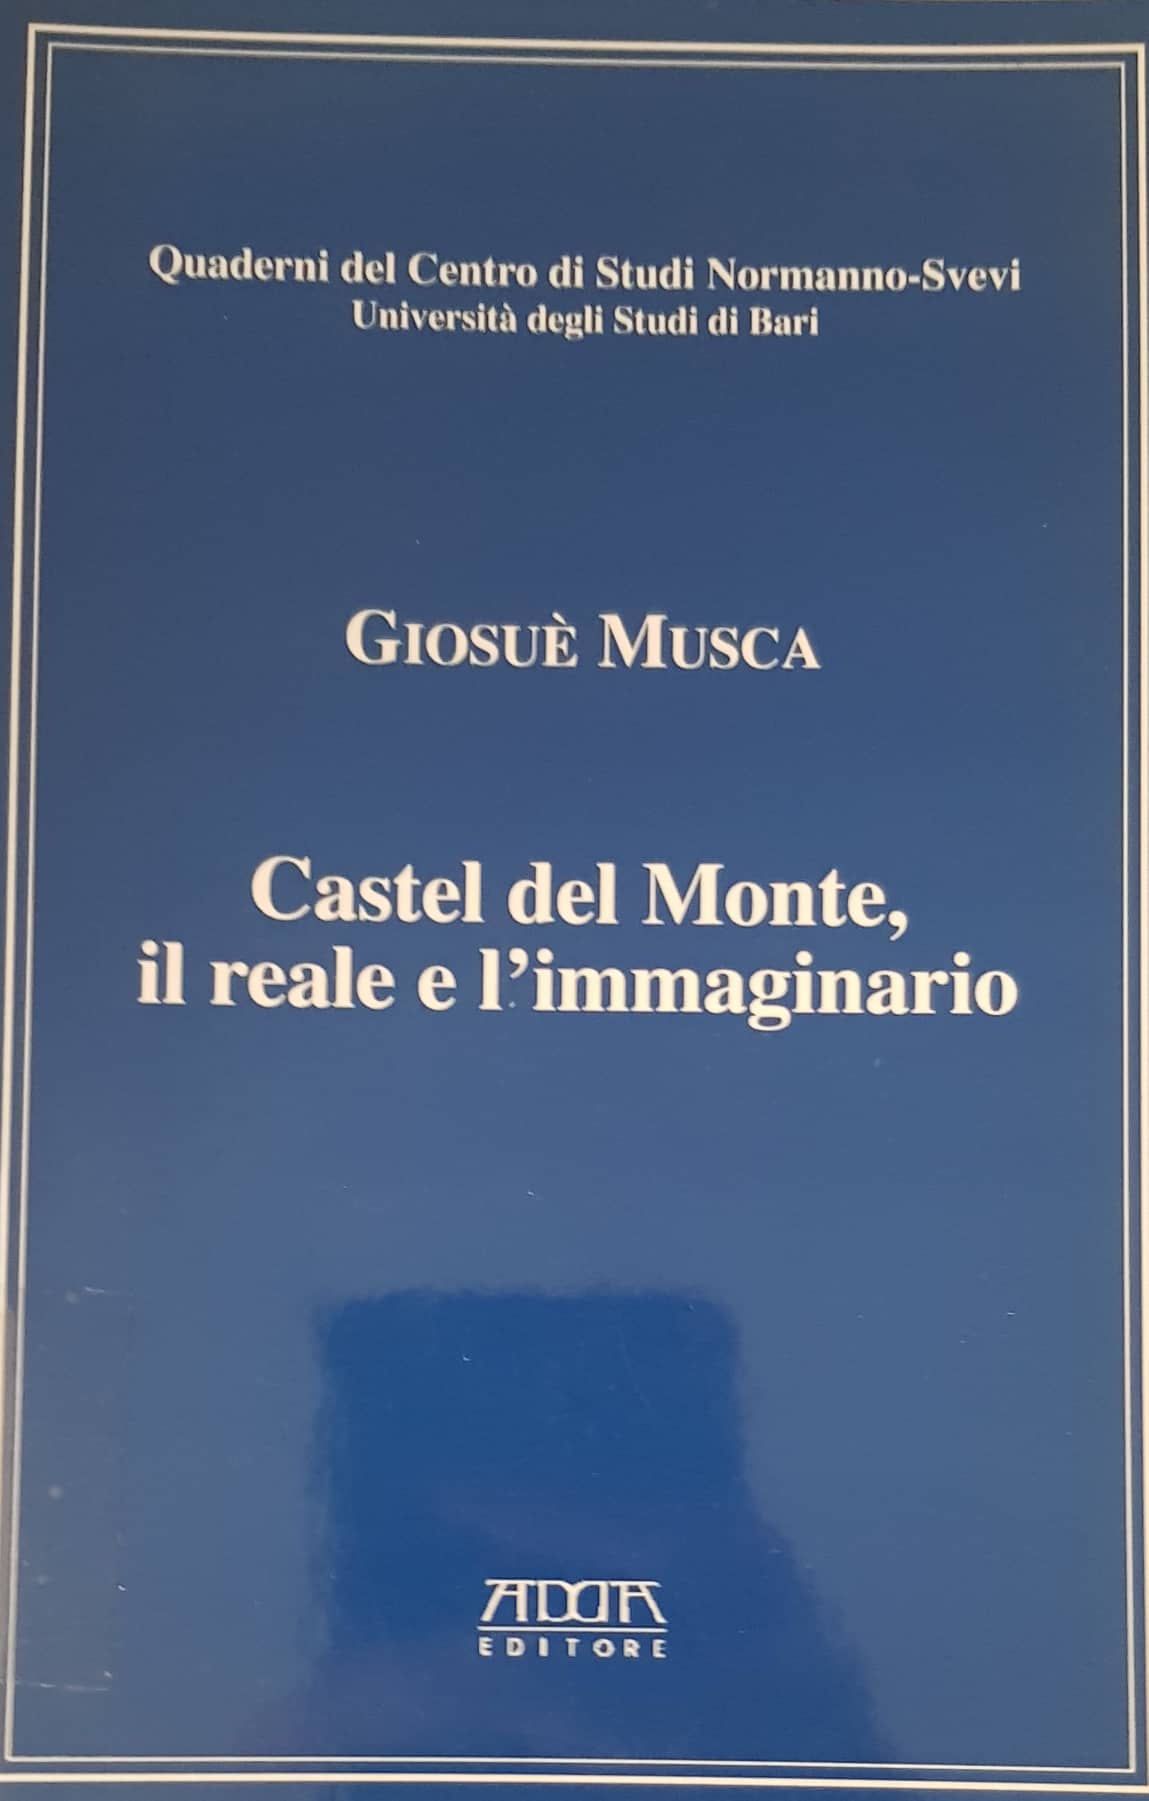 Copertina di Castel del Monte, il reale e immaginario